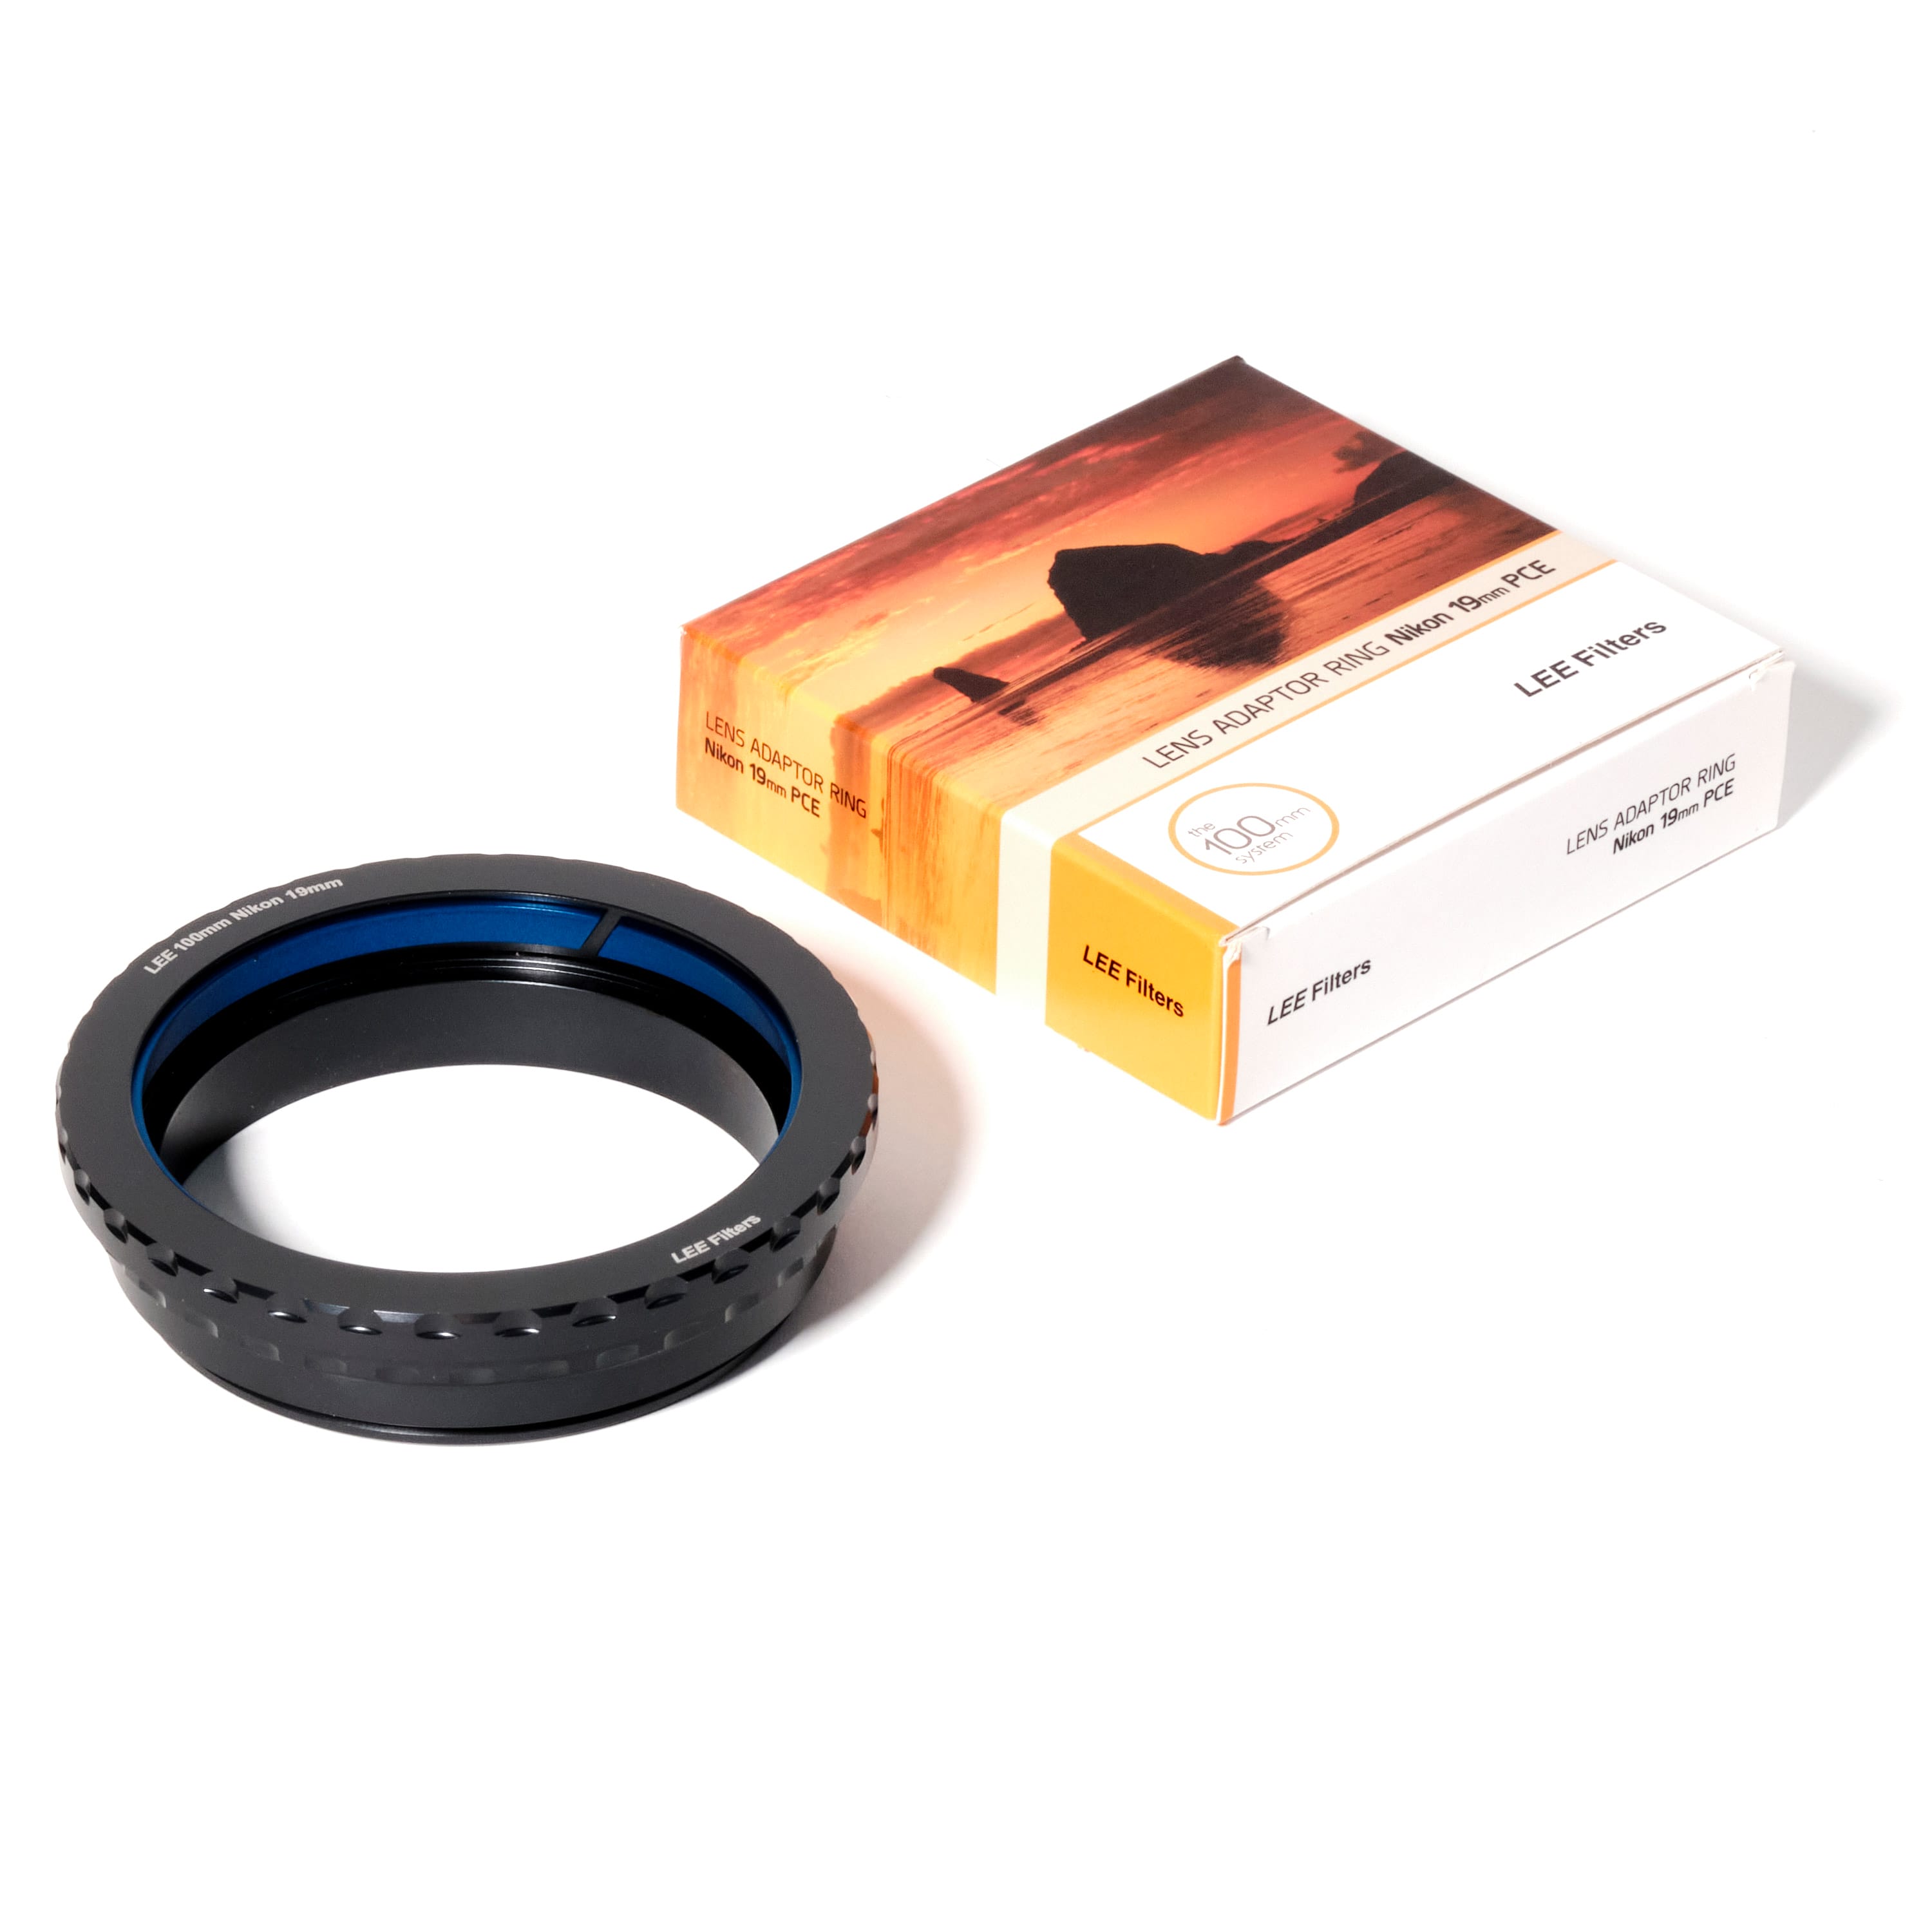 Lee Filters Wide Angle fhwaar49 °C Adapter Ring 49 mm Diameter Black 